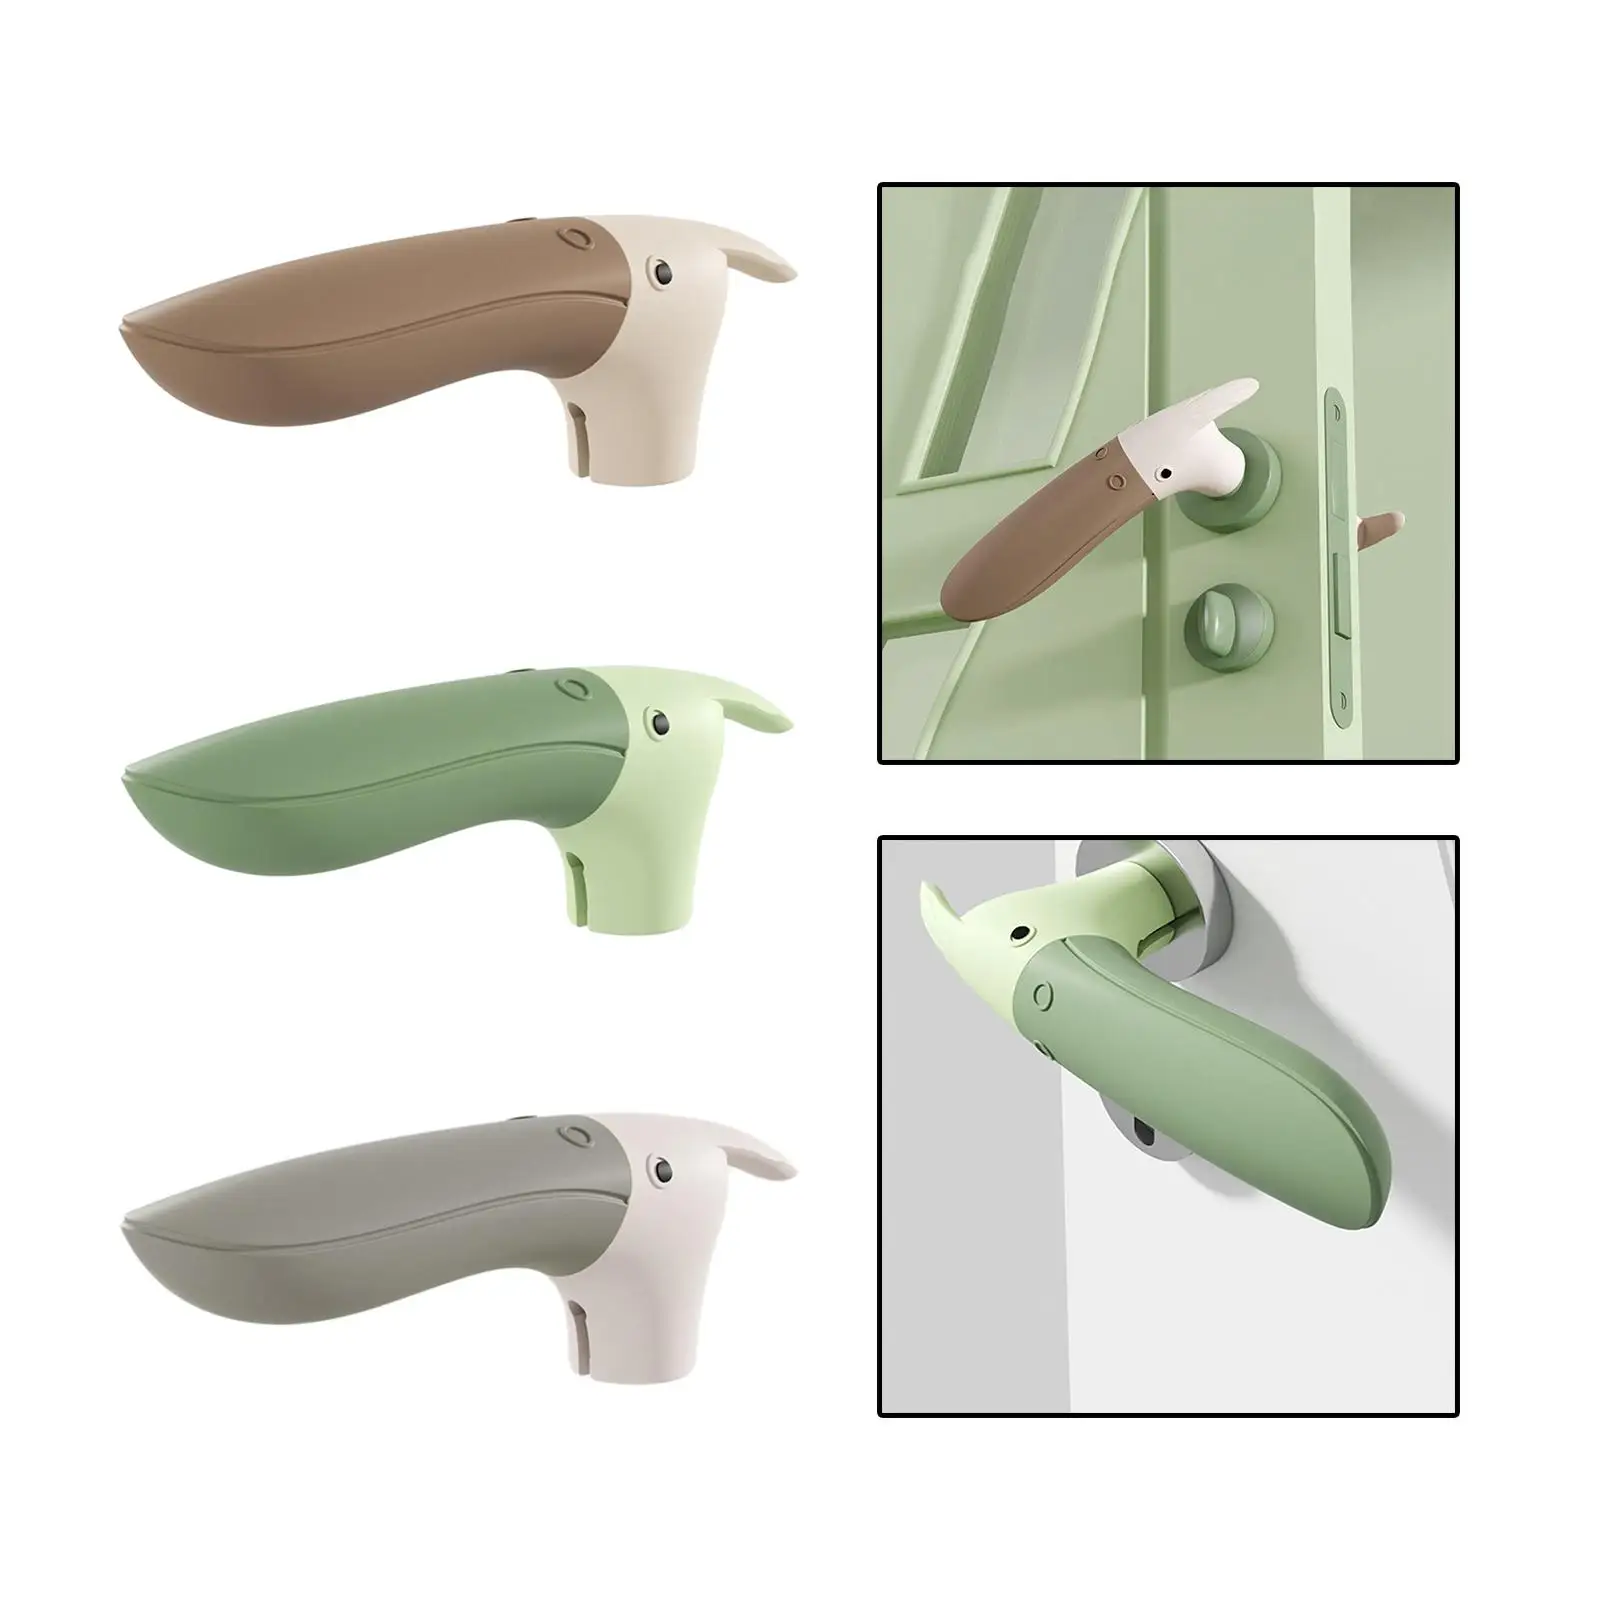 Toucan Shaped Door Handle Stopper Door Pull Protective Reusable Doorknob Cover Safety Guard for Kitchen Kindergarten Office Home